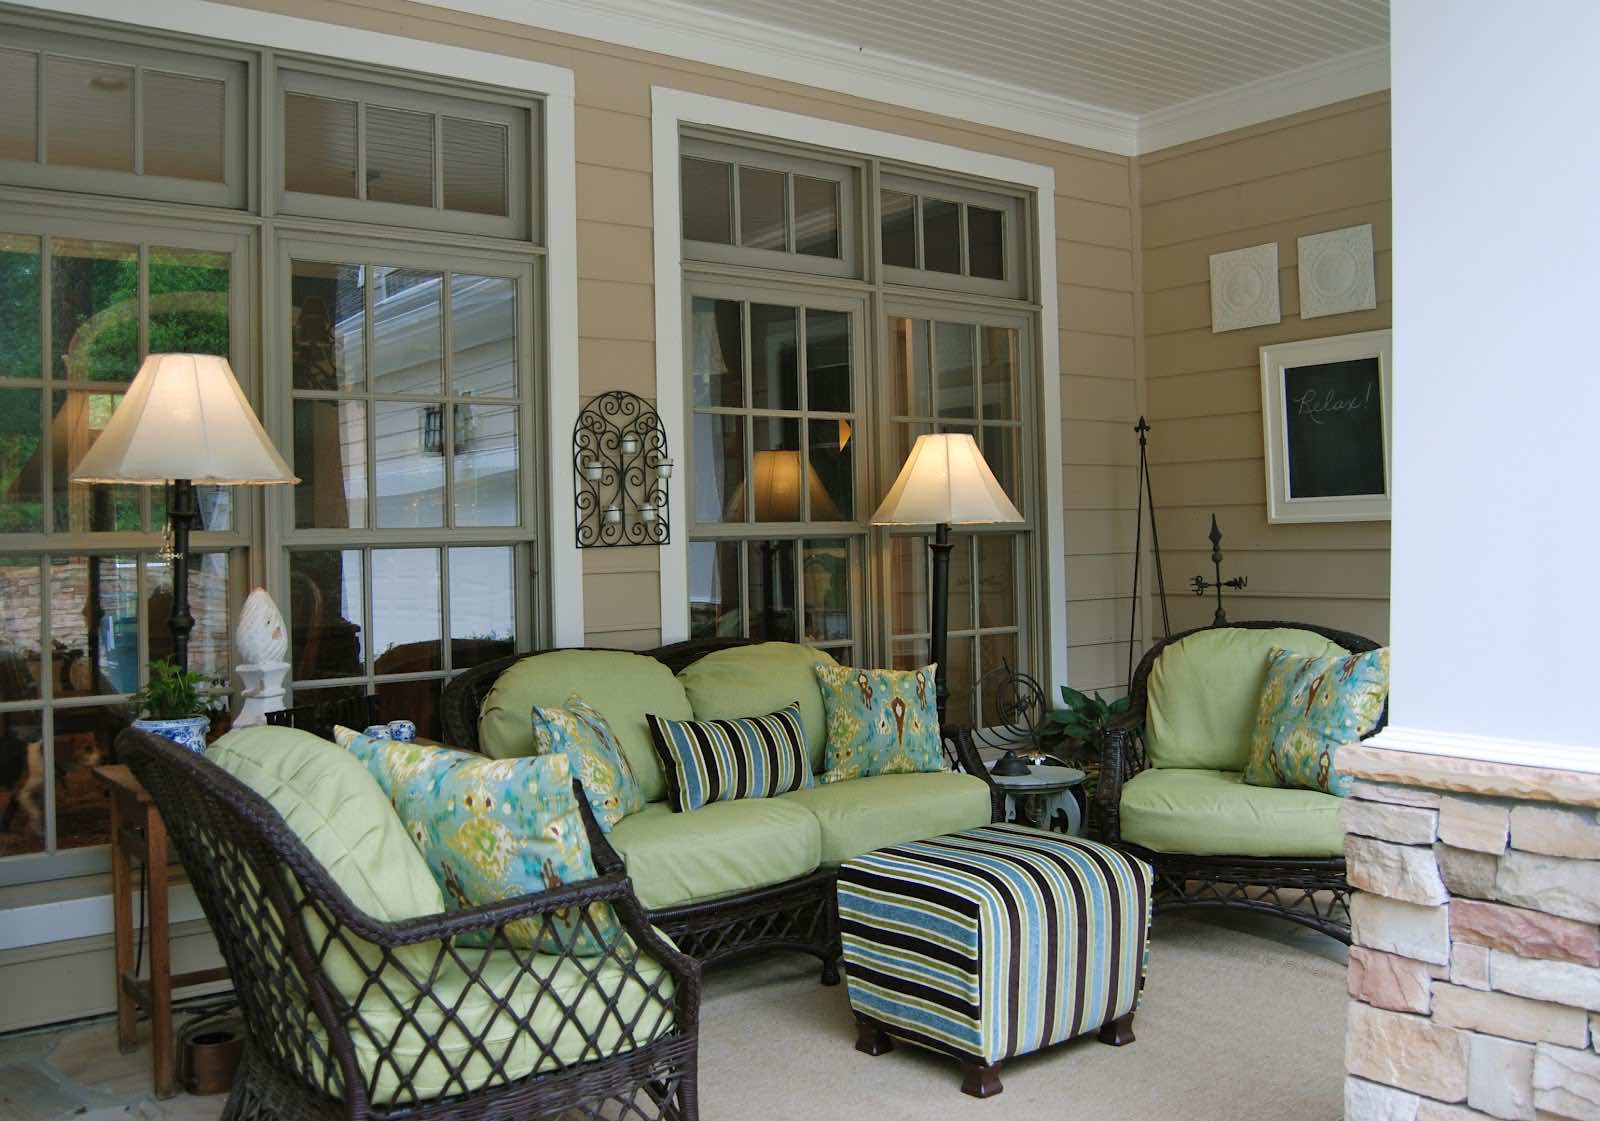 25 Inspiring Porch Design Ideas For Your Home